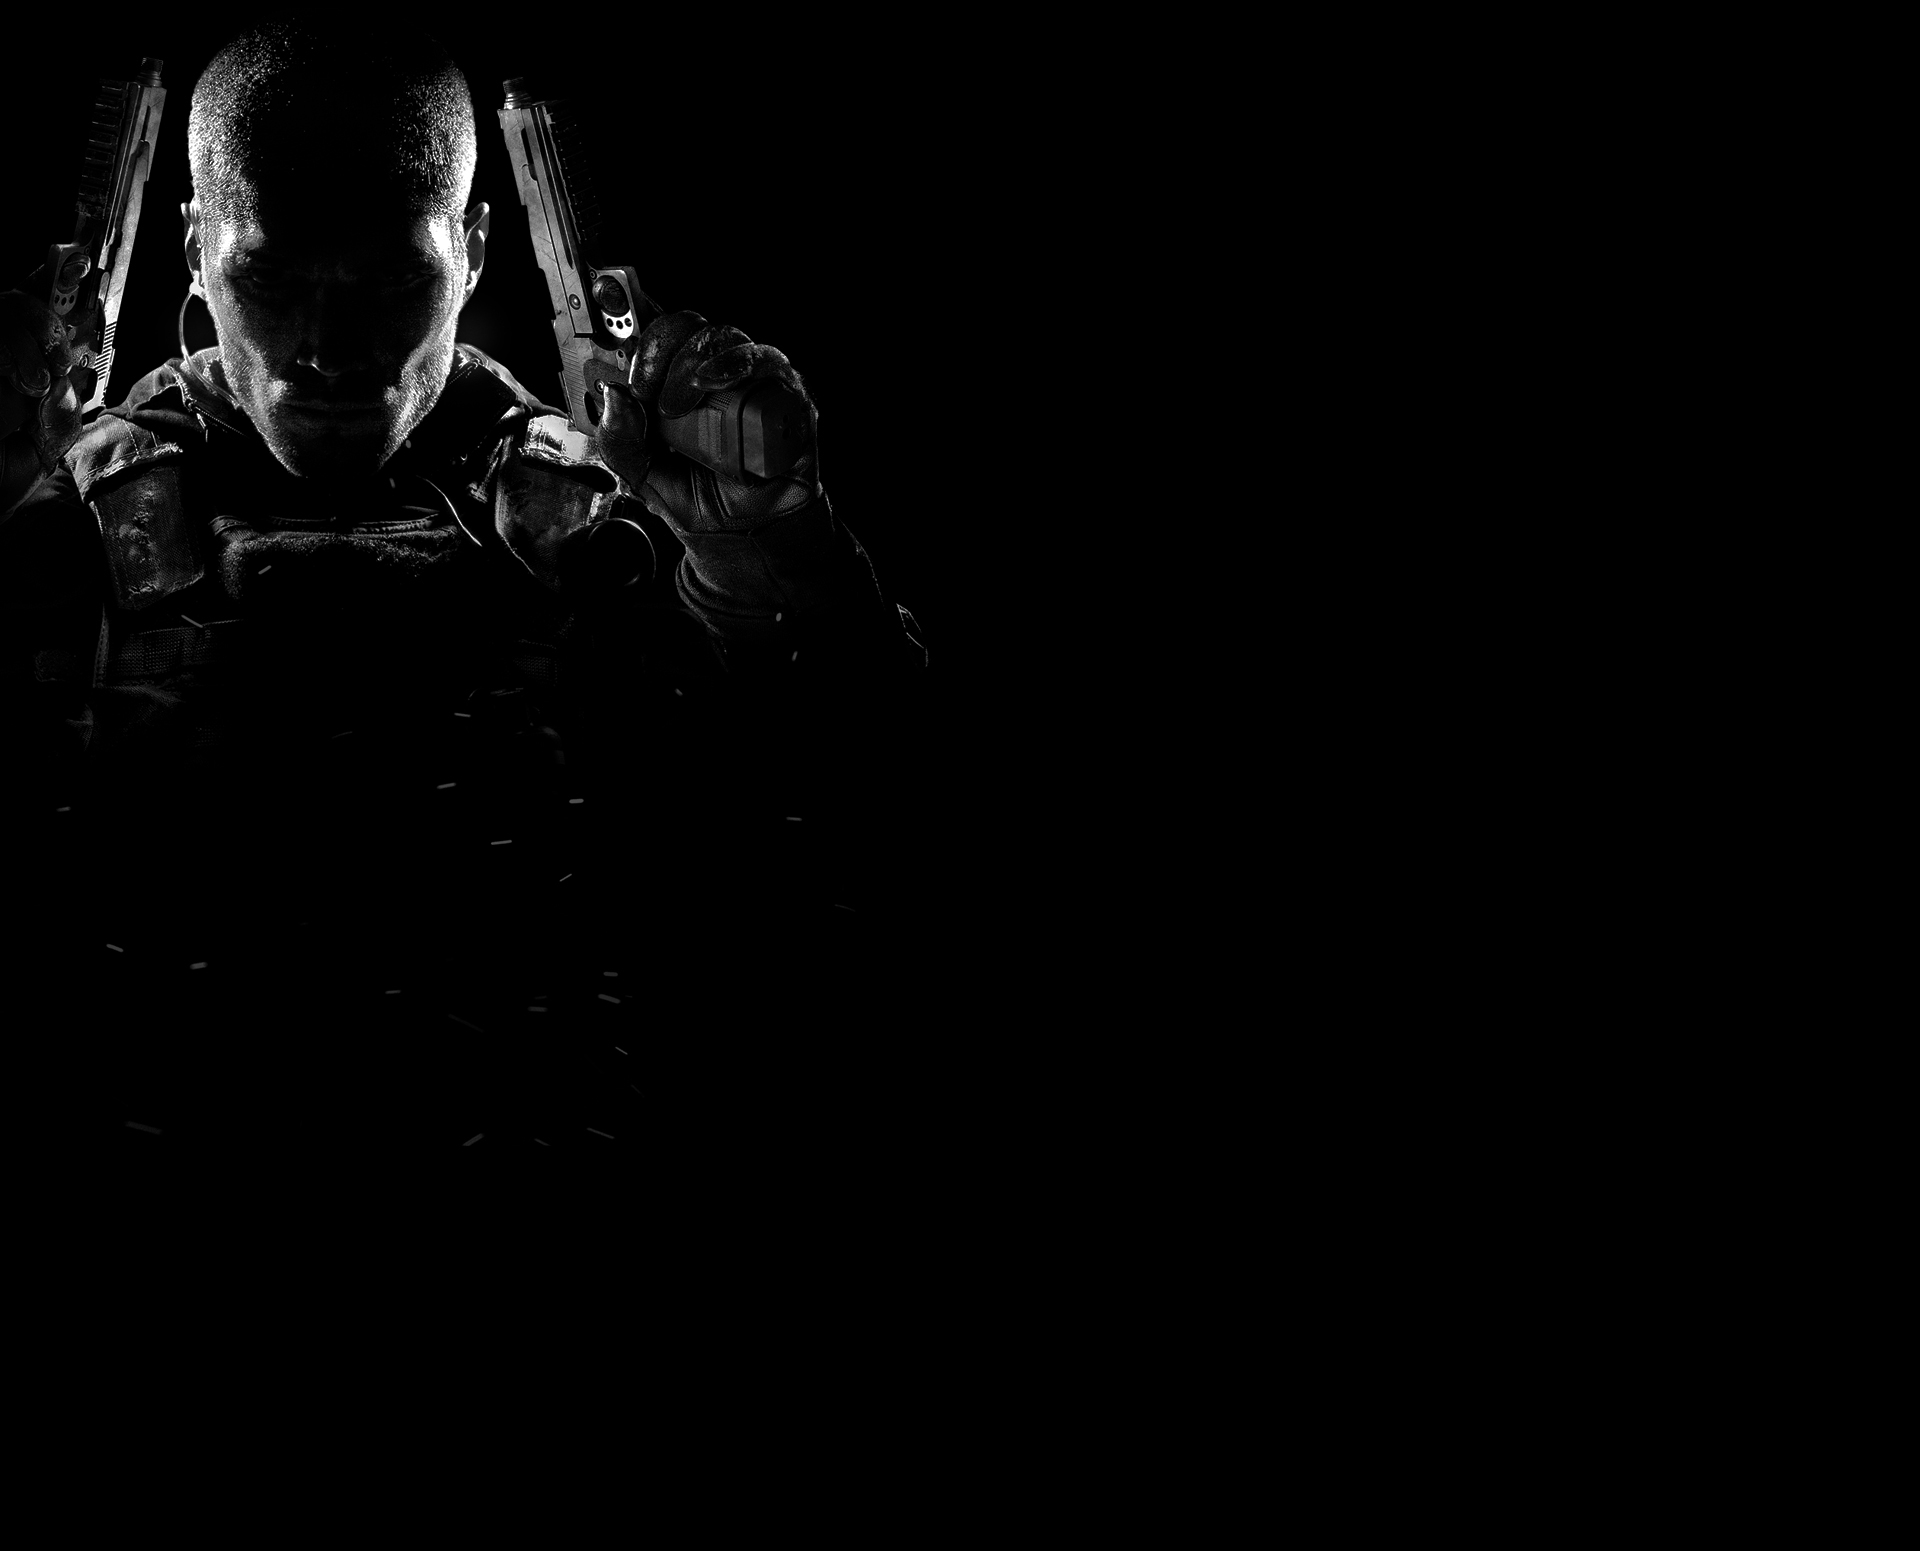 Descarga gratis la imagen Videojuego, Call Of Duty, Call Of Duty: Black Ops Ii en el escritorio de tu PC